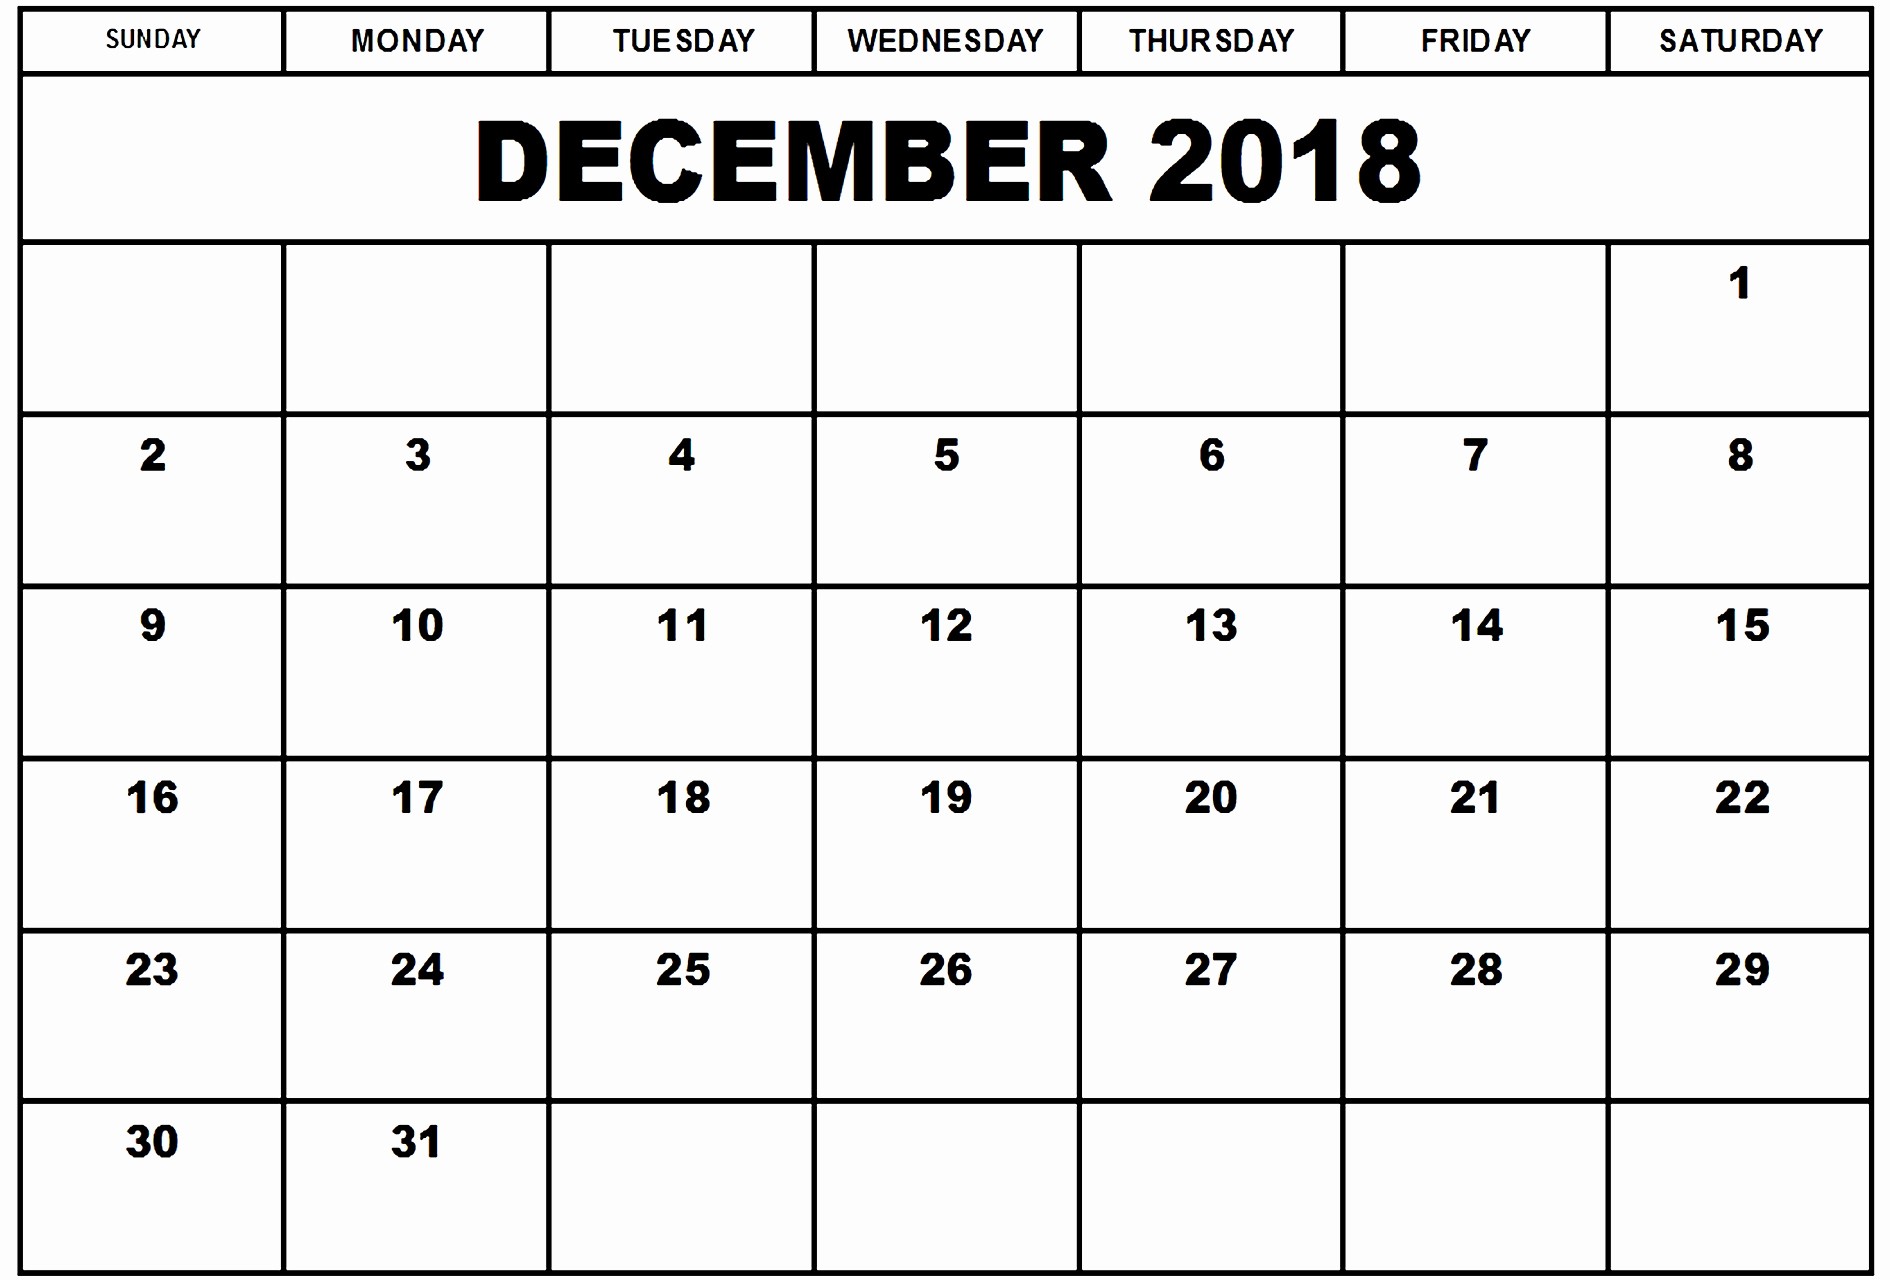 December 2017 Calendar Template Word Lovely December 2018 Calendar Word